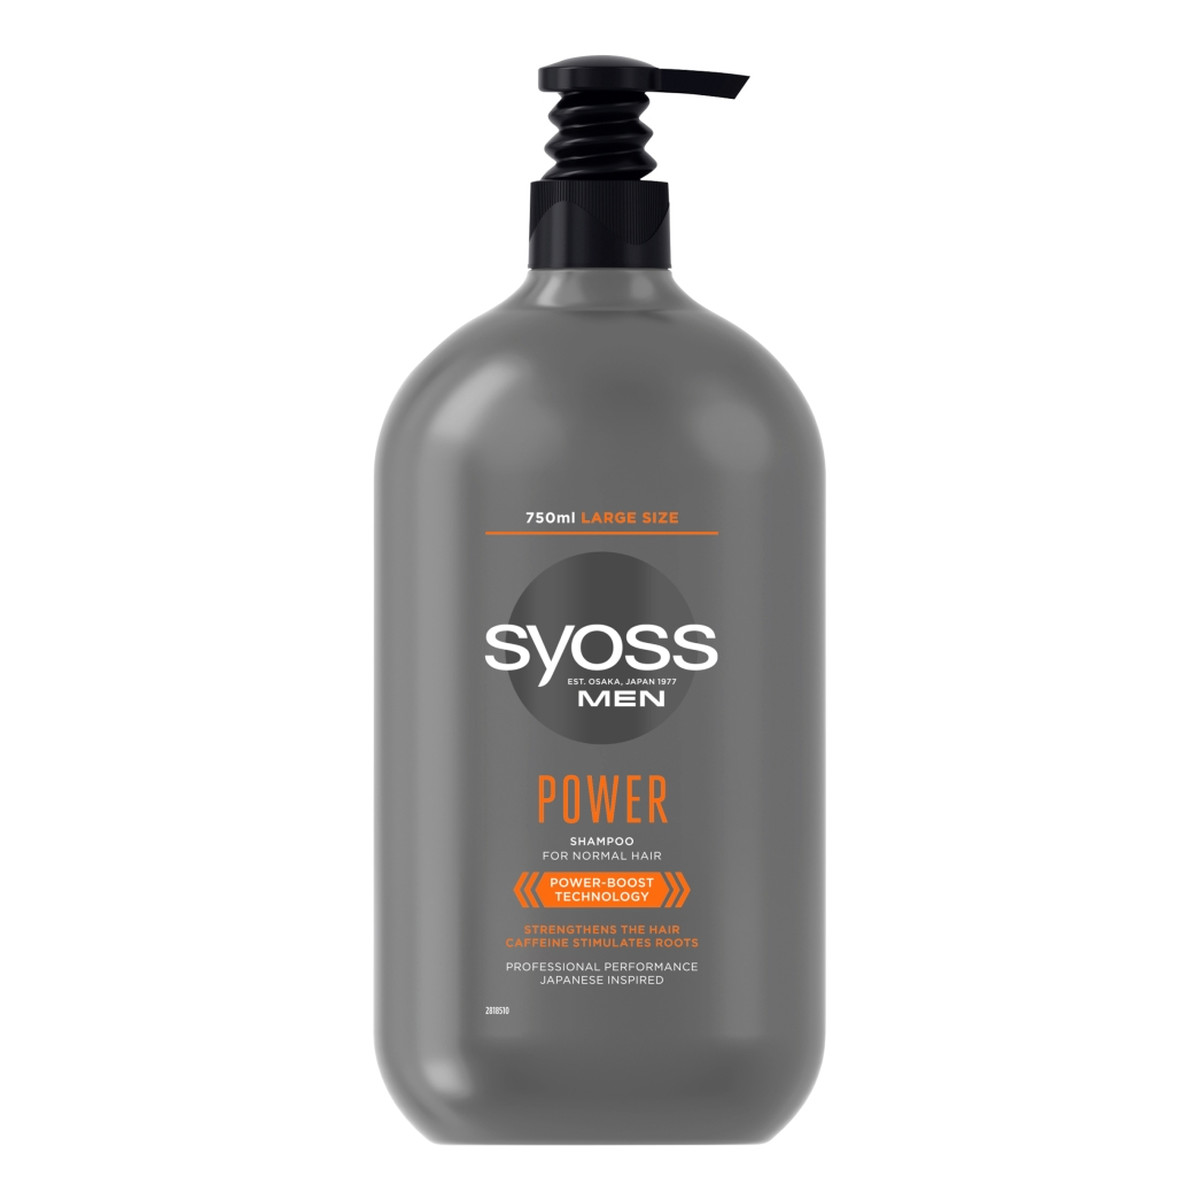 Syoss Men power shampoo szampon do włosów normalnych dla mężczyzn 750ml